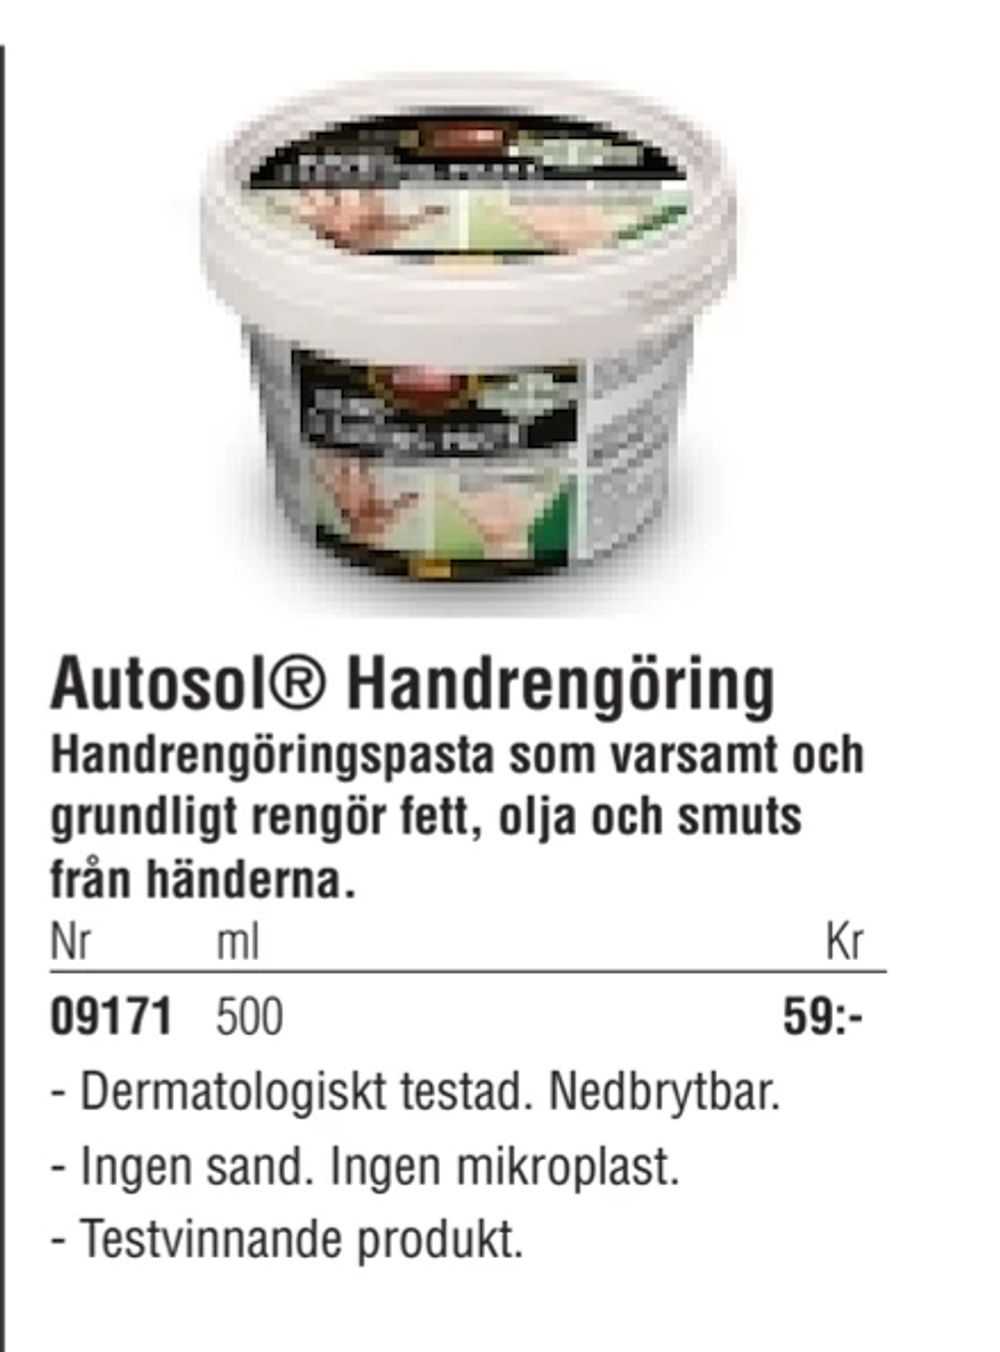 Erbjudanden på Autosol® Handrengöring från Erlandsons Brygga för 59 kr